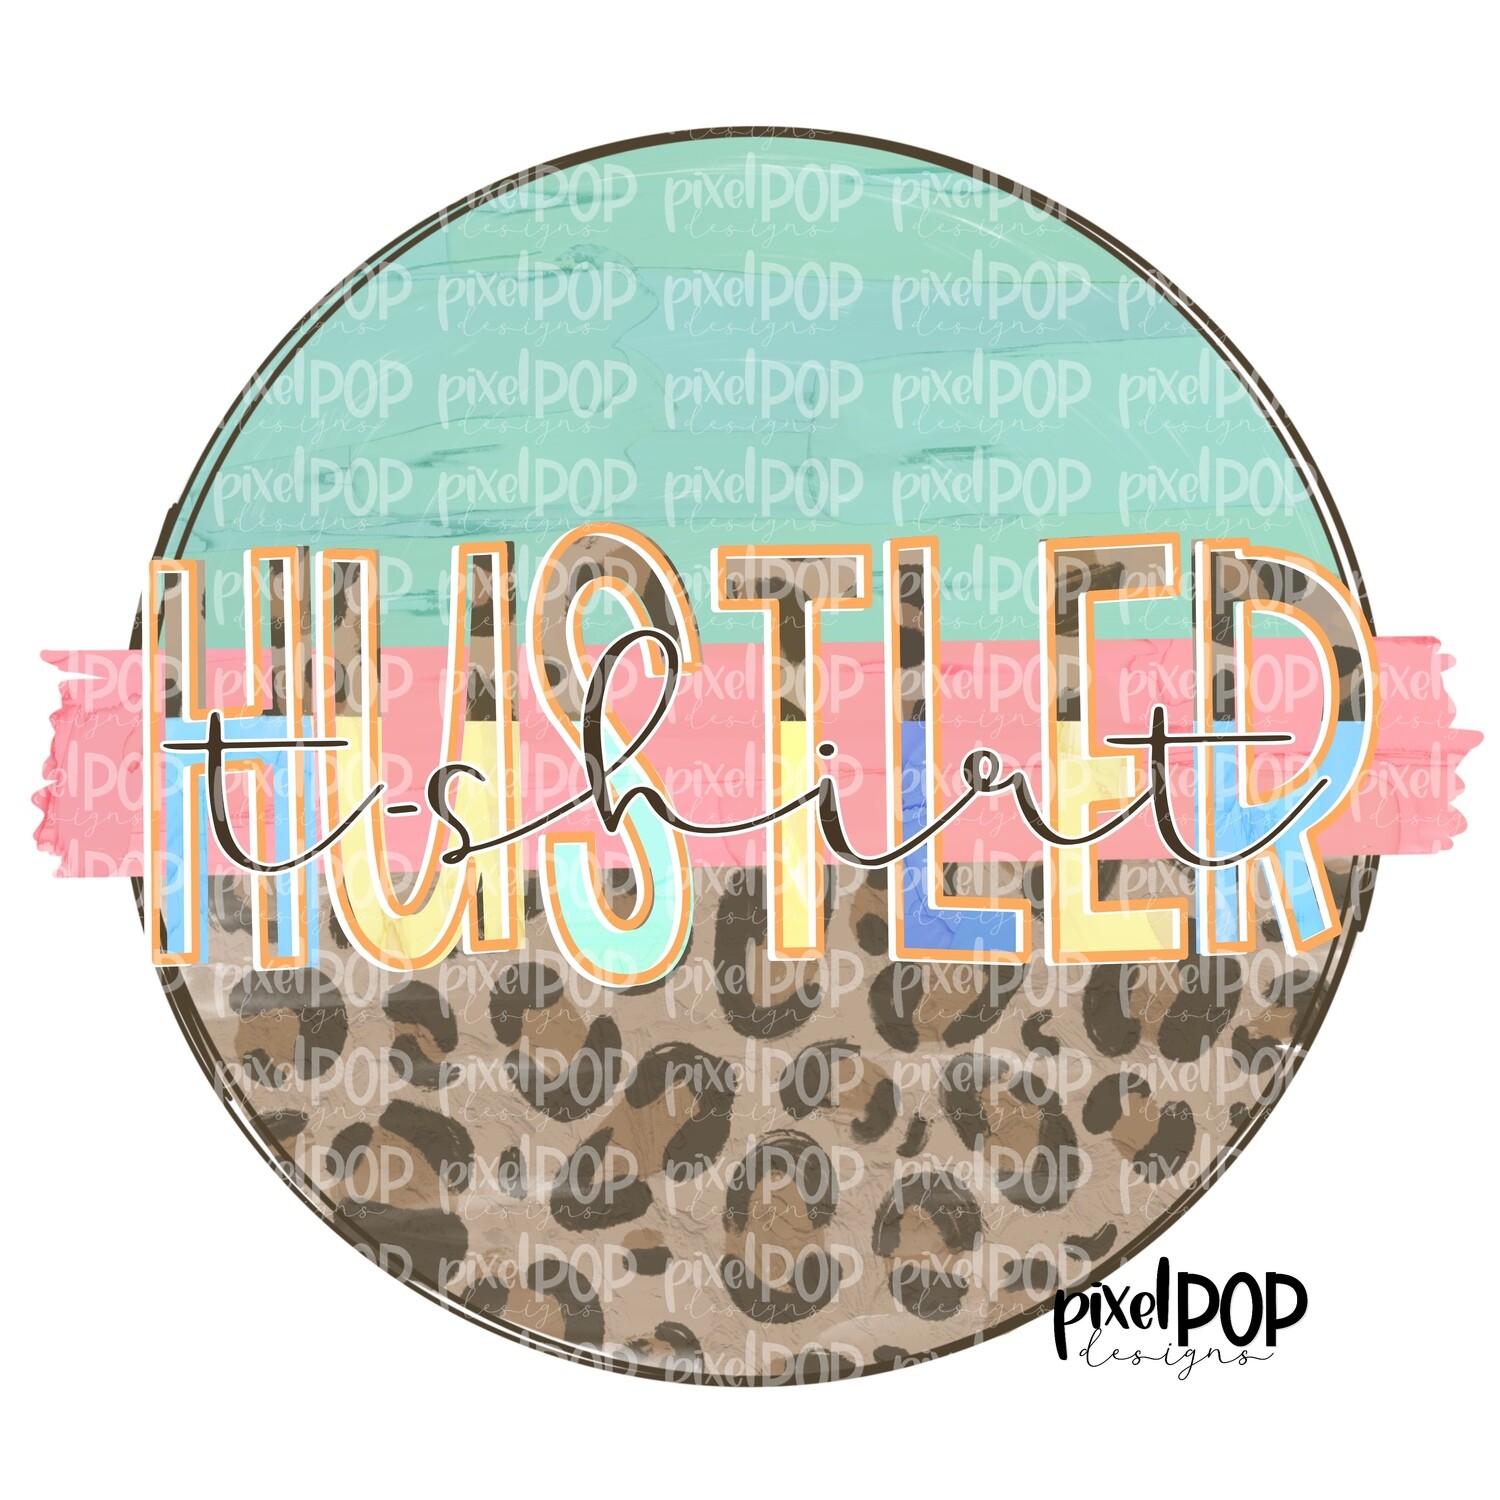 T-Shirt Hustler Leopard and Mint PNG | Enterprenuer Digital | Sublimation PNG | Retail Work | Crafty design | Digital Download | Printable